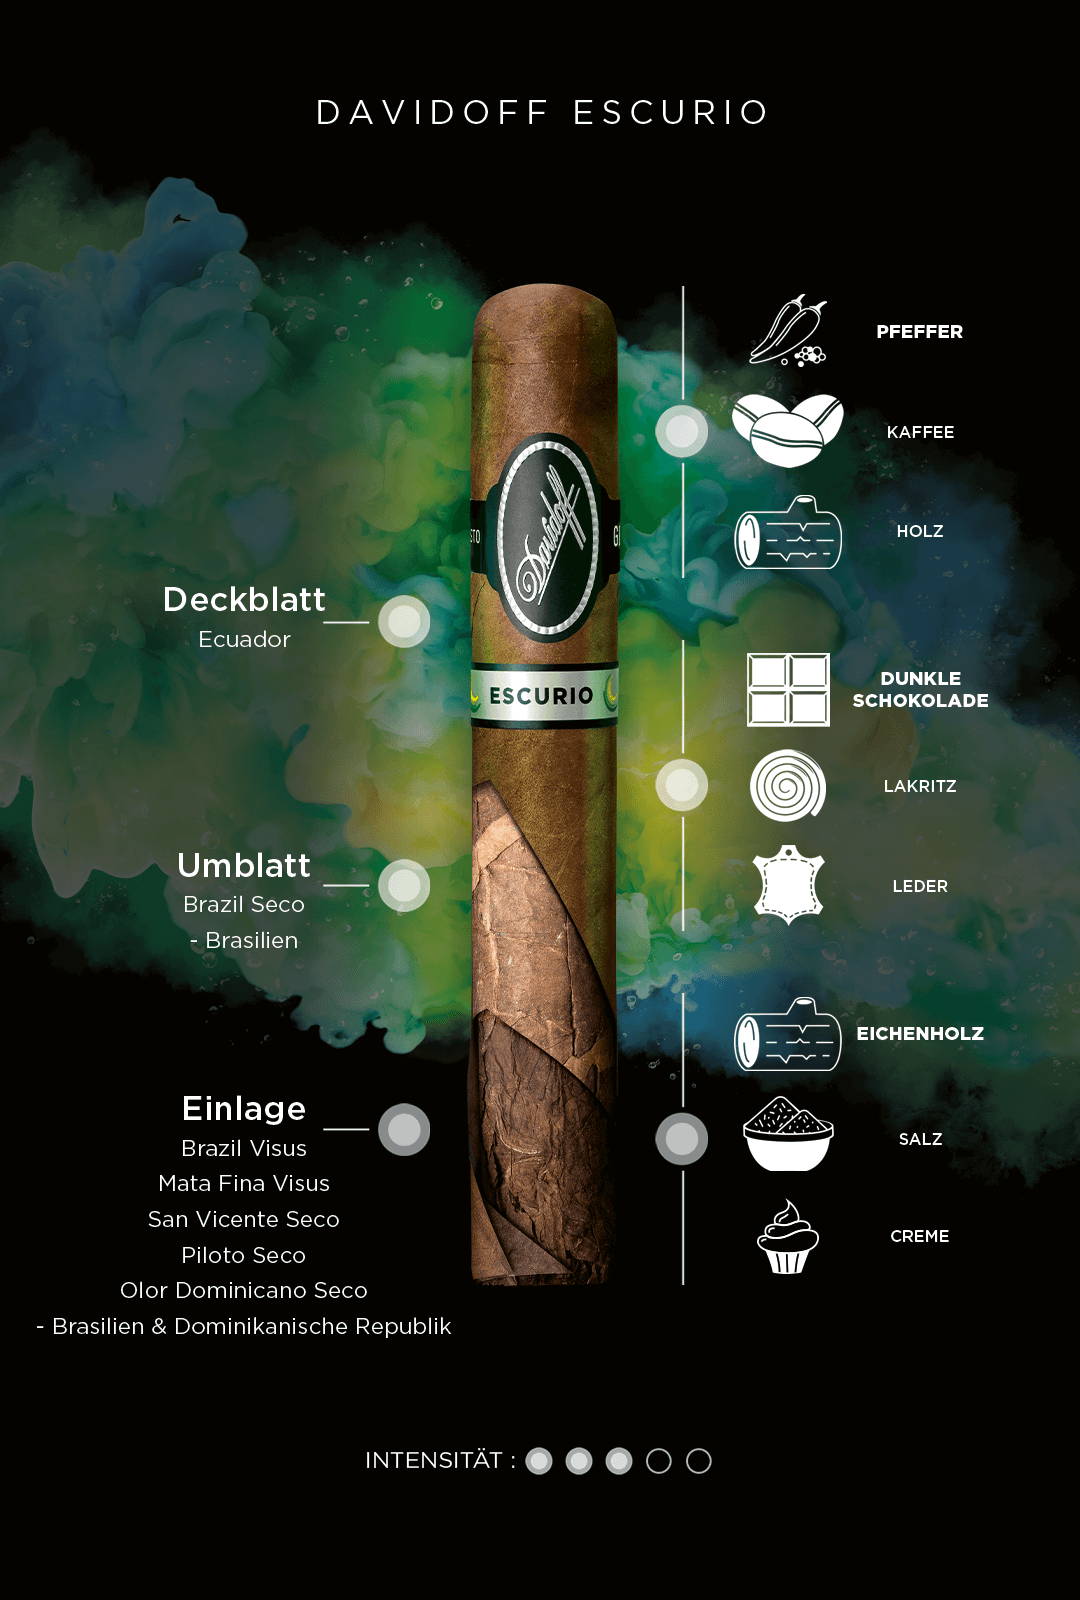 Genussdetails von Davidoff Escurio-Zigarren inklusive Aromen, Tabakinformationen und Intensität.